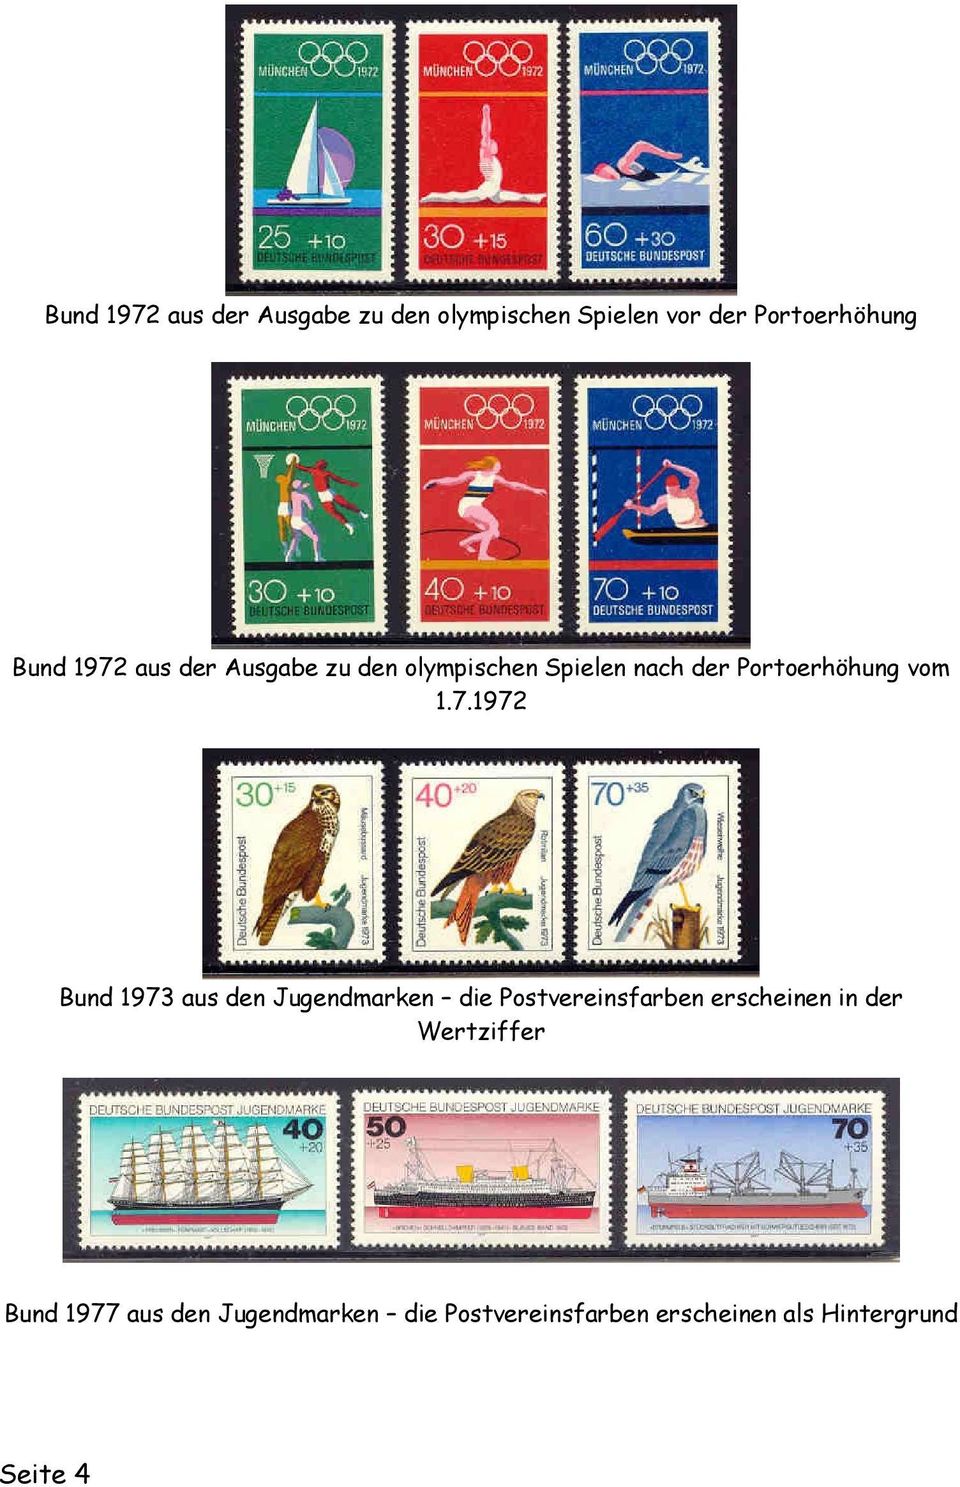 Bund 1973 aus den Jugendmarken die Postvereinsfarben erscheinen in der Wertziffer